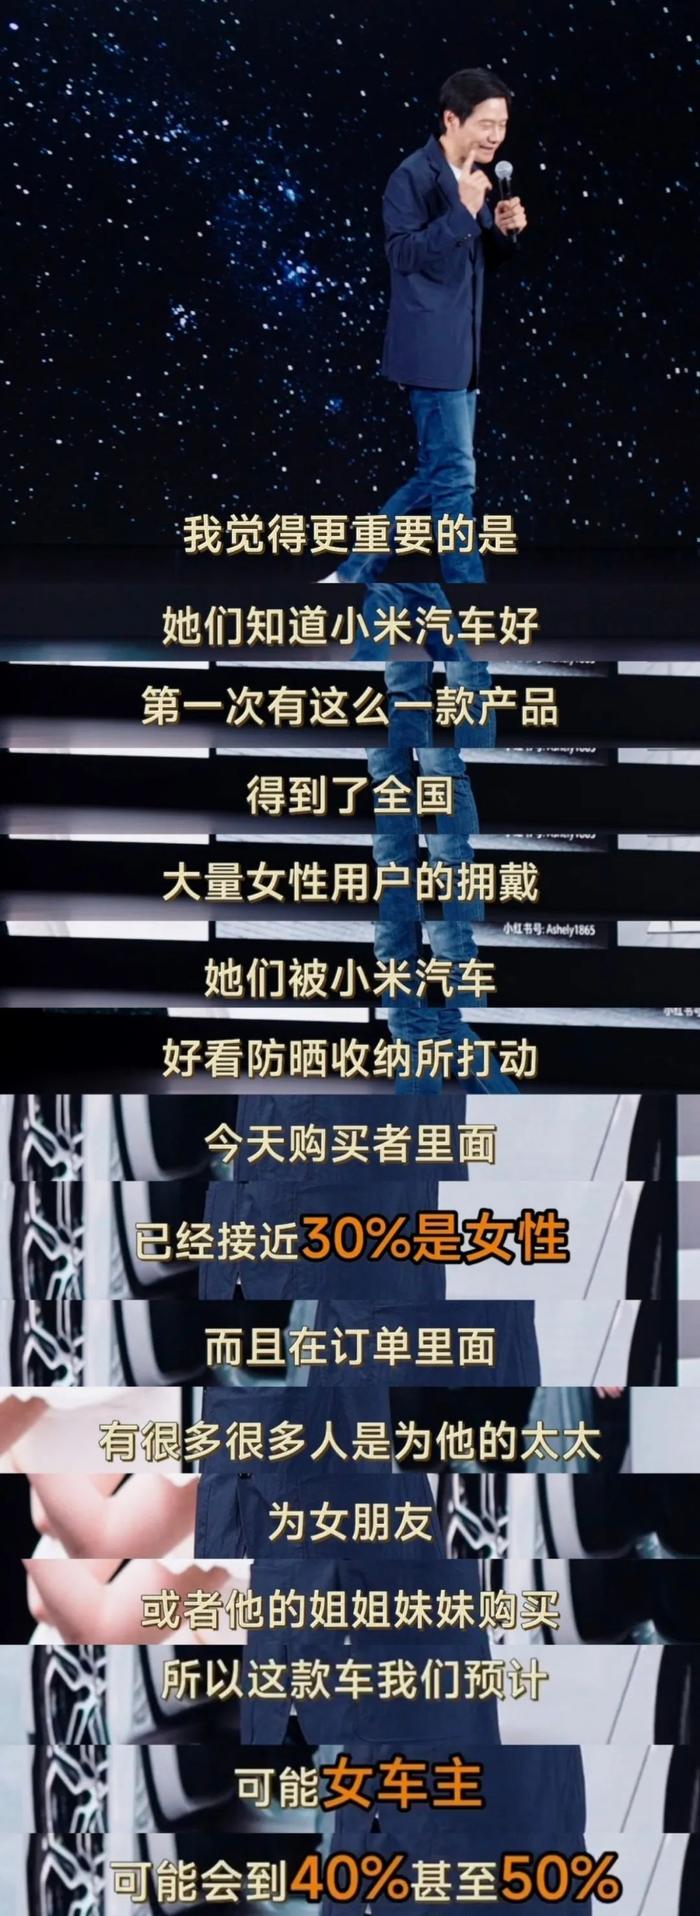 【品牌】雷军称小米SU7女性车主占比可能到40%-50%